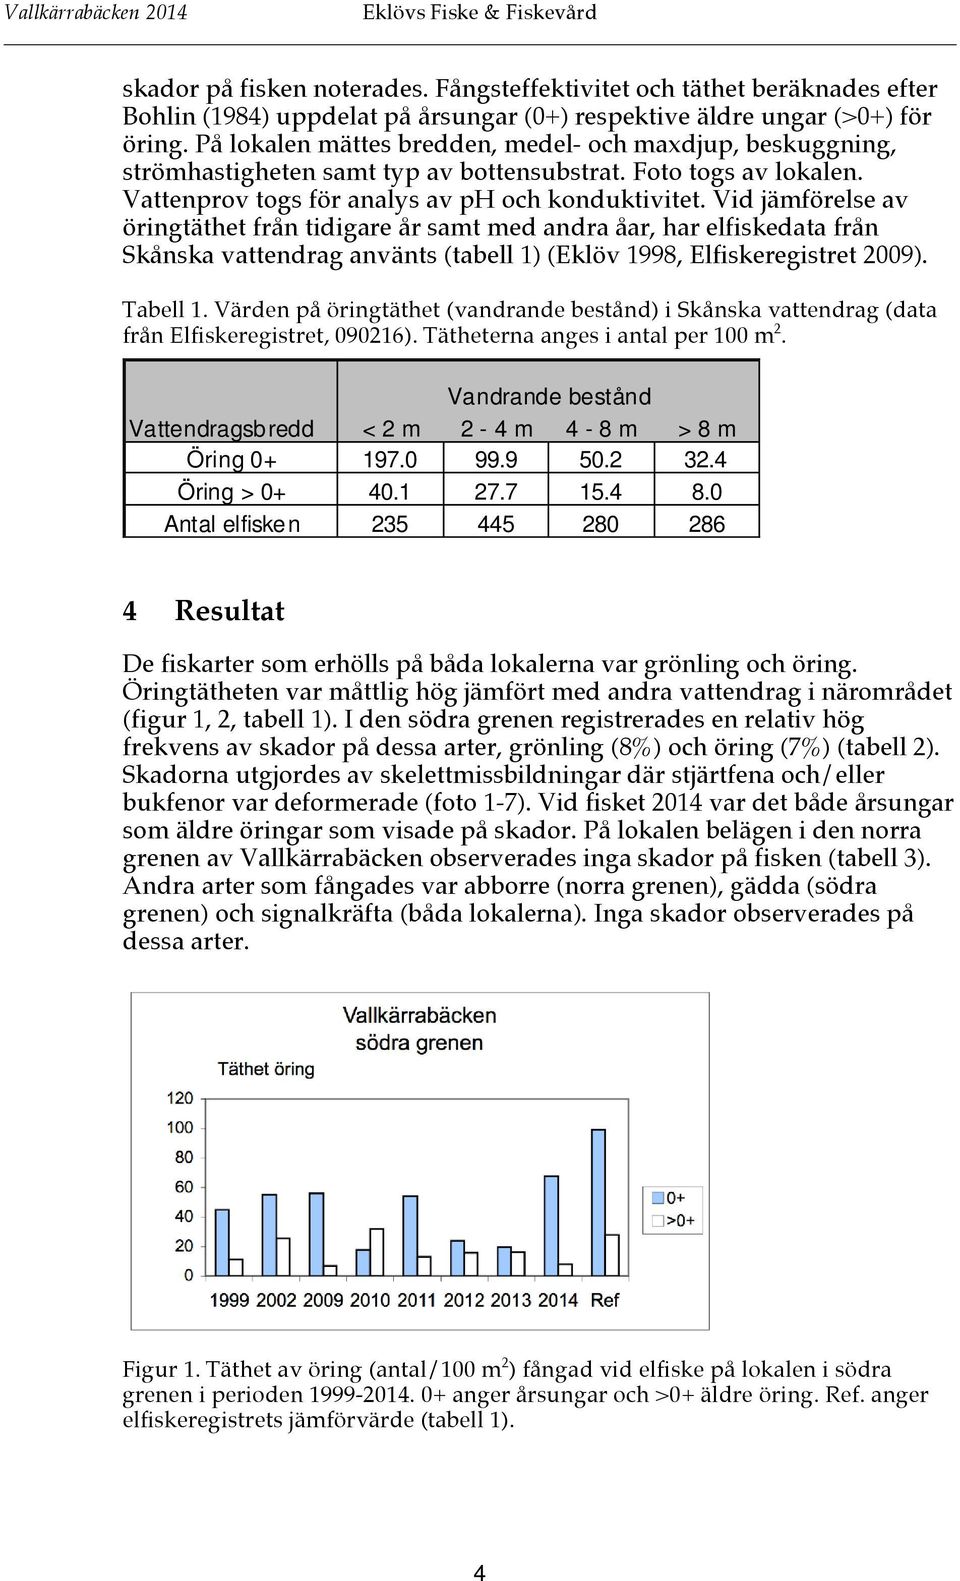 Vid jämförelse av öringtäthet från tidigare år samt med andra åar, har elfiskedata från Skånska vattendrag använts (tabell 1) (Eklöv 1998, Elfiskeregistret 2009). Tabell 1.